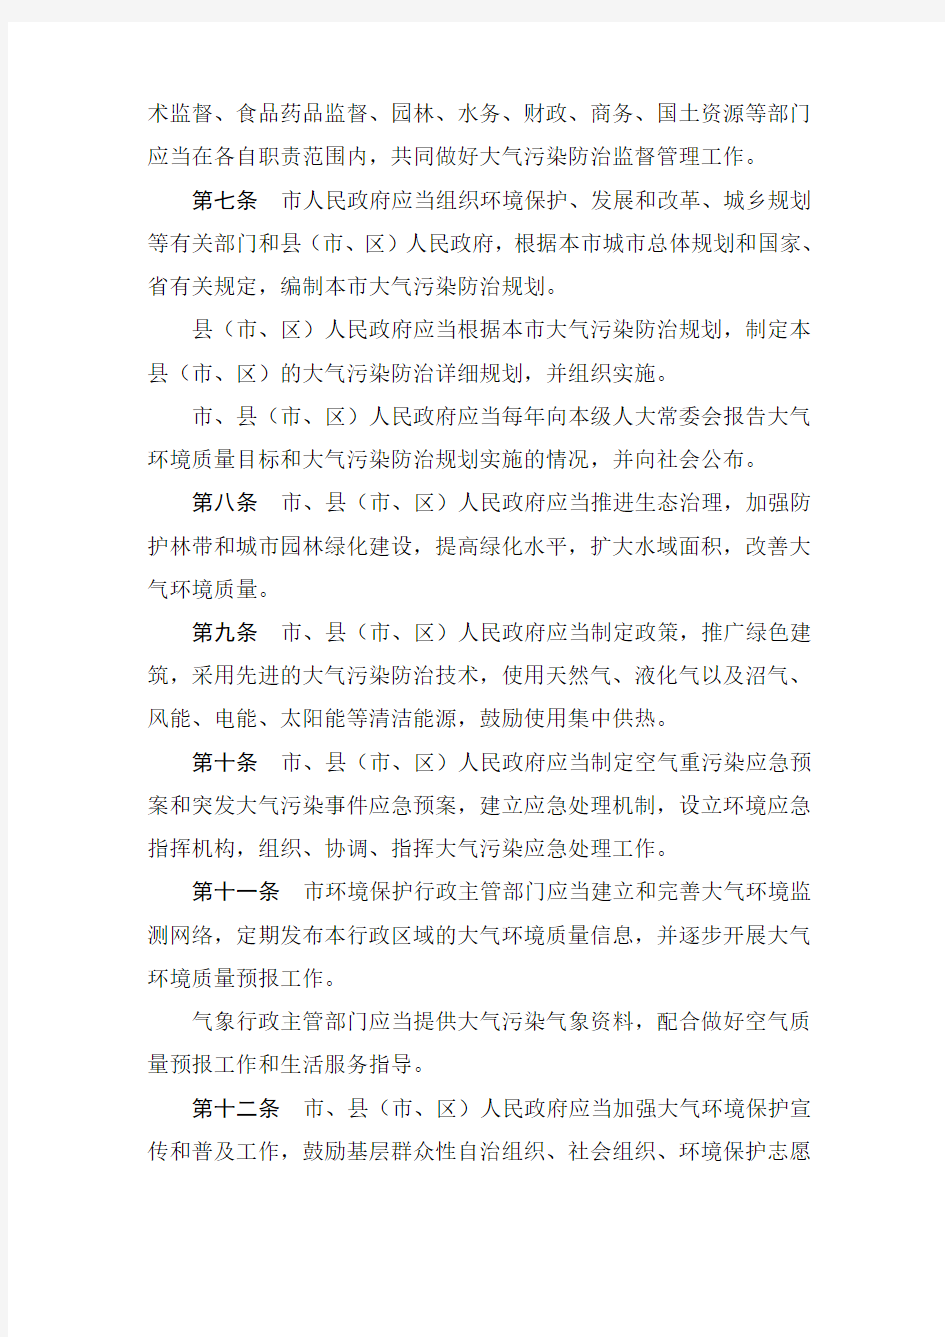 郑州市大气污染防治条例(修订)